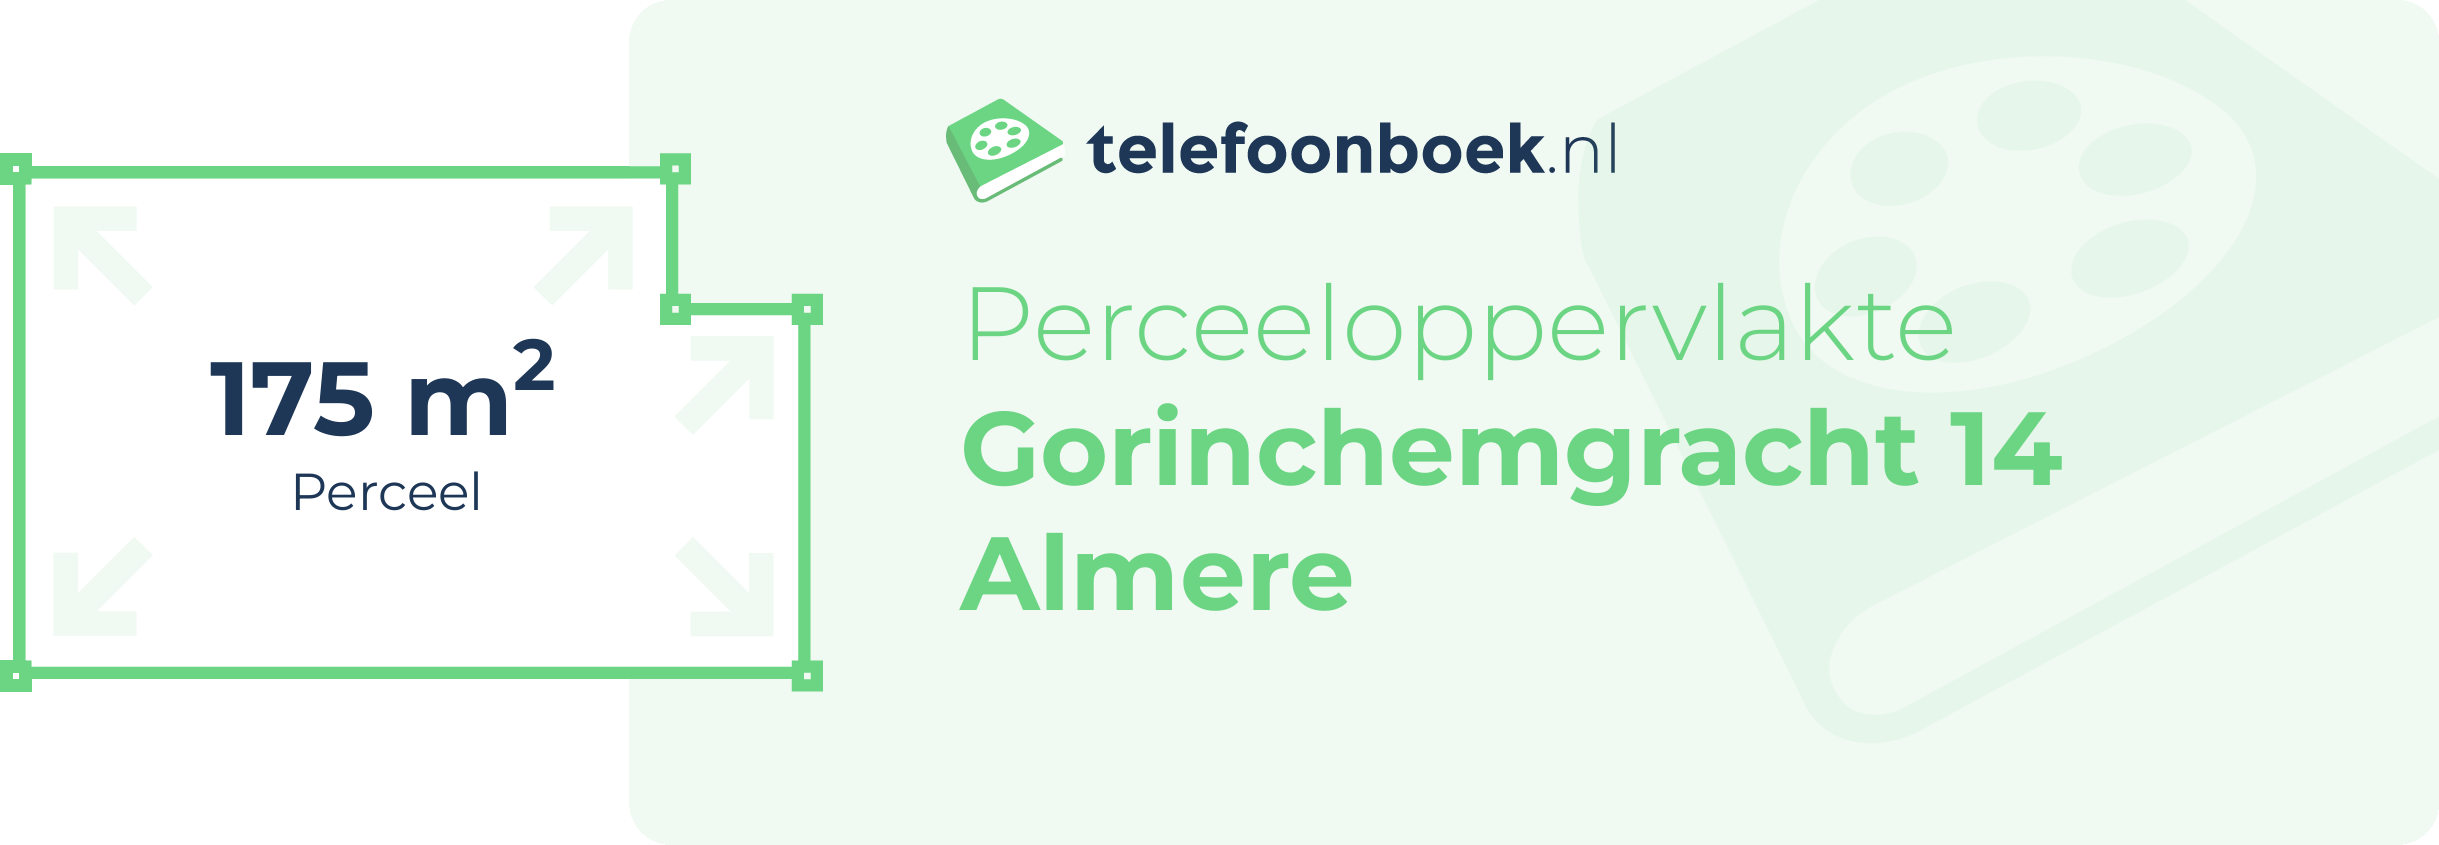 Perceeloppervlakte Gorinchemgracht 14 Almere